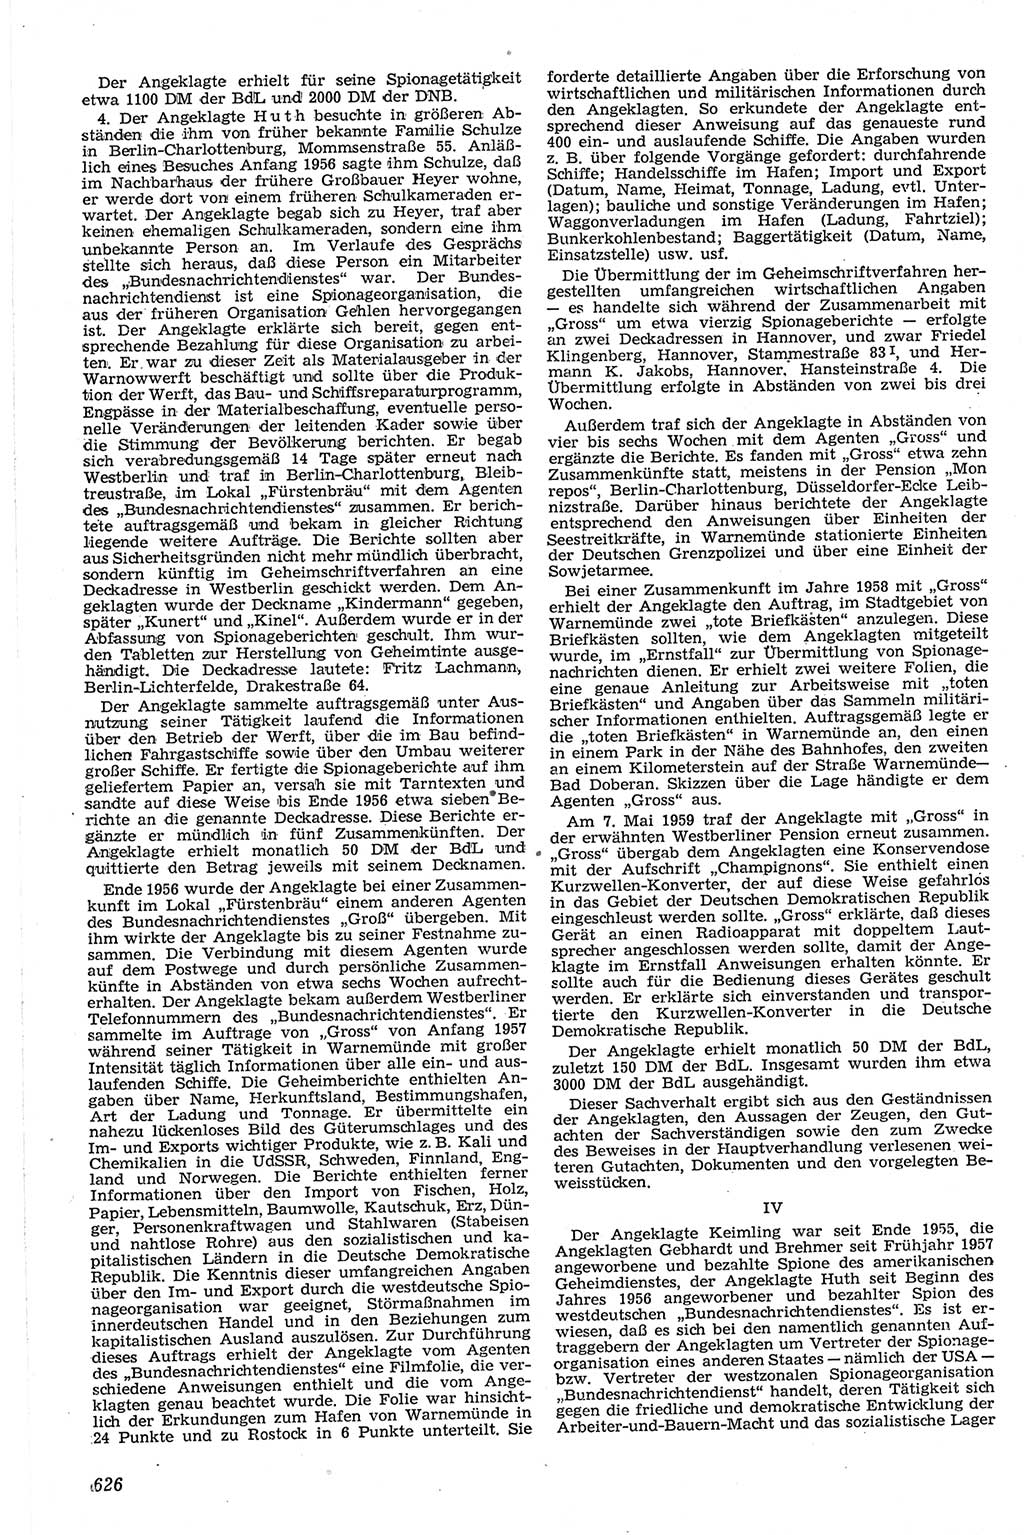 Neue Justiz (NJ), Zeitschrift für Recht und Rechtswissenschaft [Deutsche Demokratische Republik (DDR)], 13. Jahrgang 1959, Seite 626 (NJ DDR 1959, S. 626)